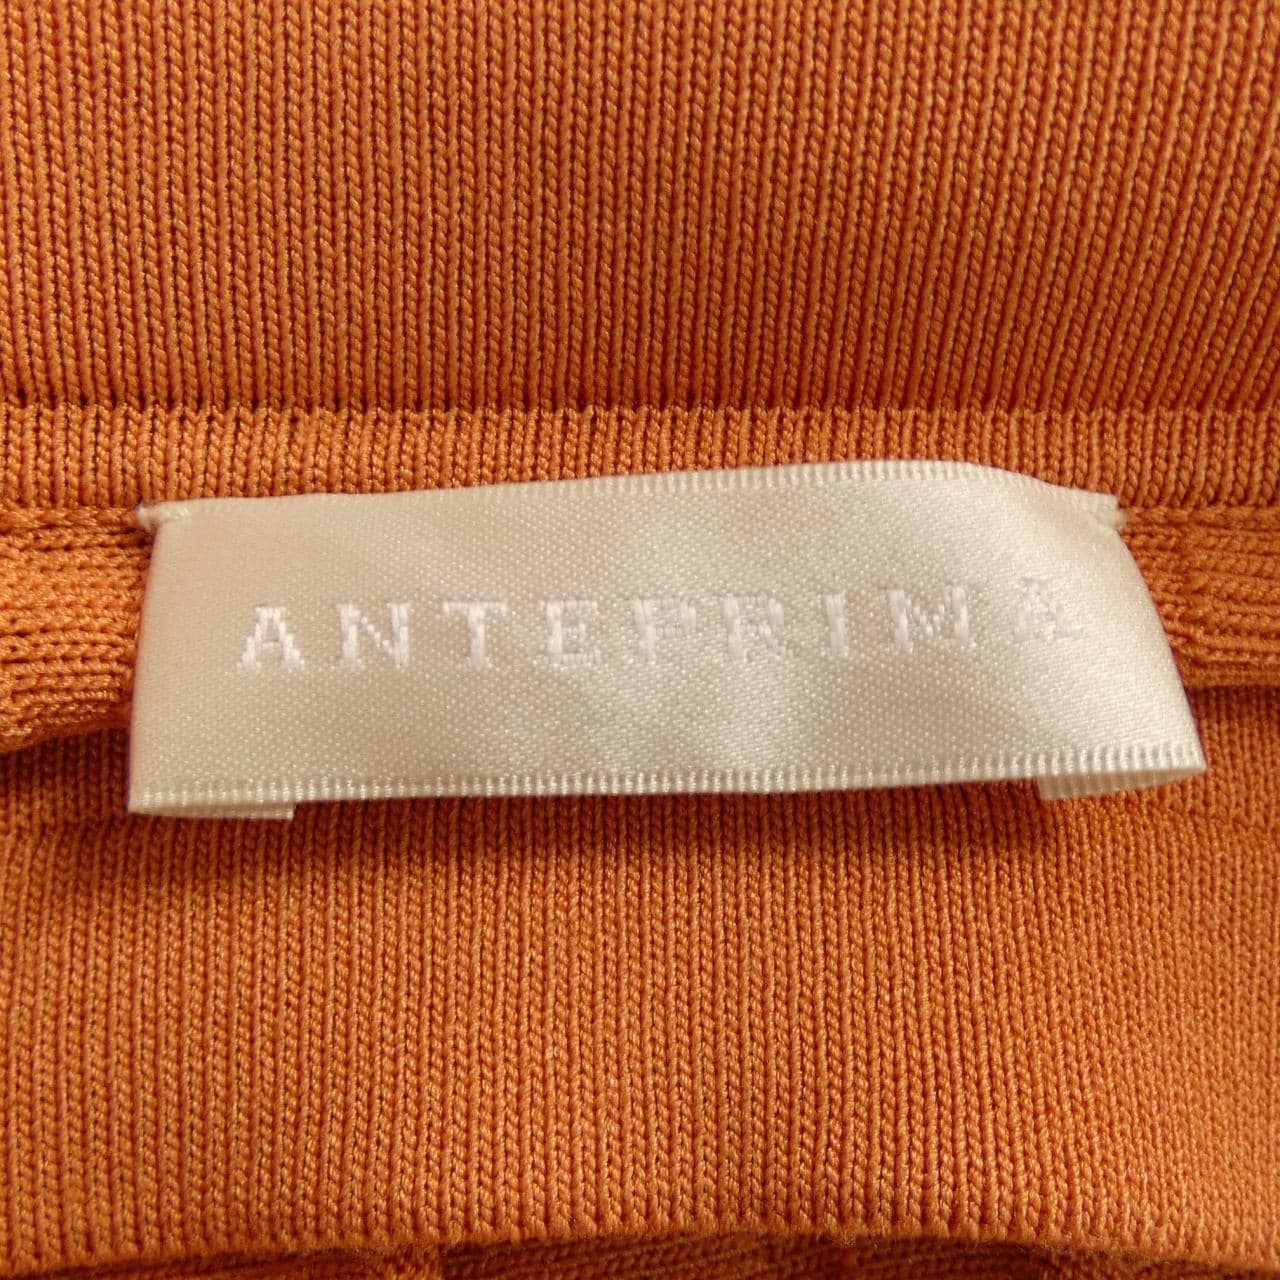 アンテプリマ ANTEPRIMA スカート